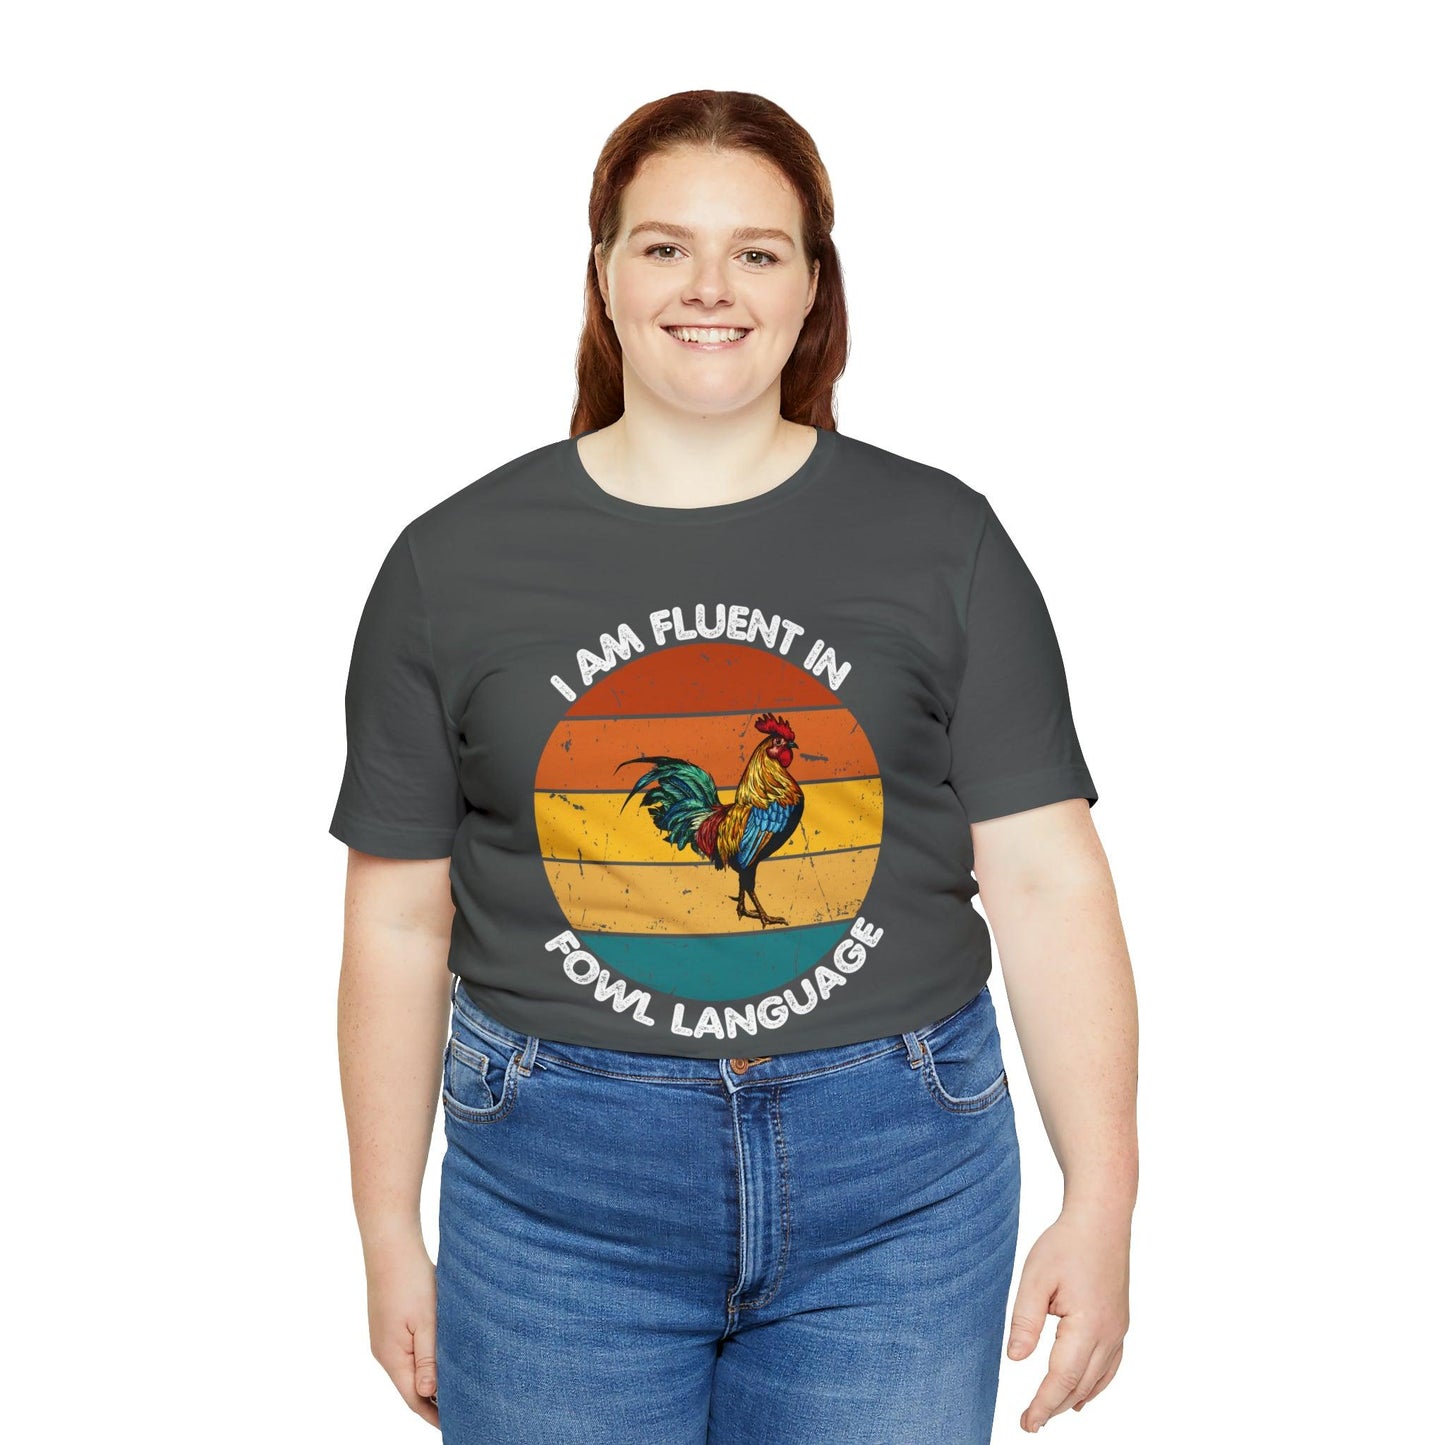 Fluent in Fowl Language shirt, Chicken Shirt Chicken Tee Chicken Owner Gift - Gift For Chicken Lover gift